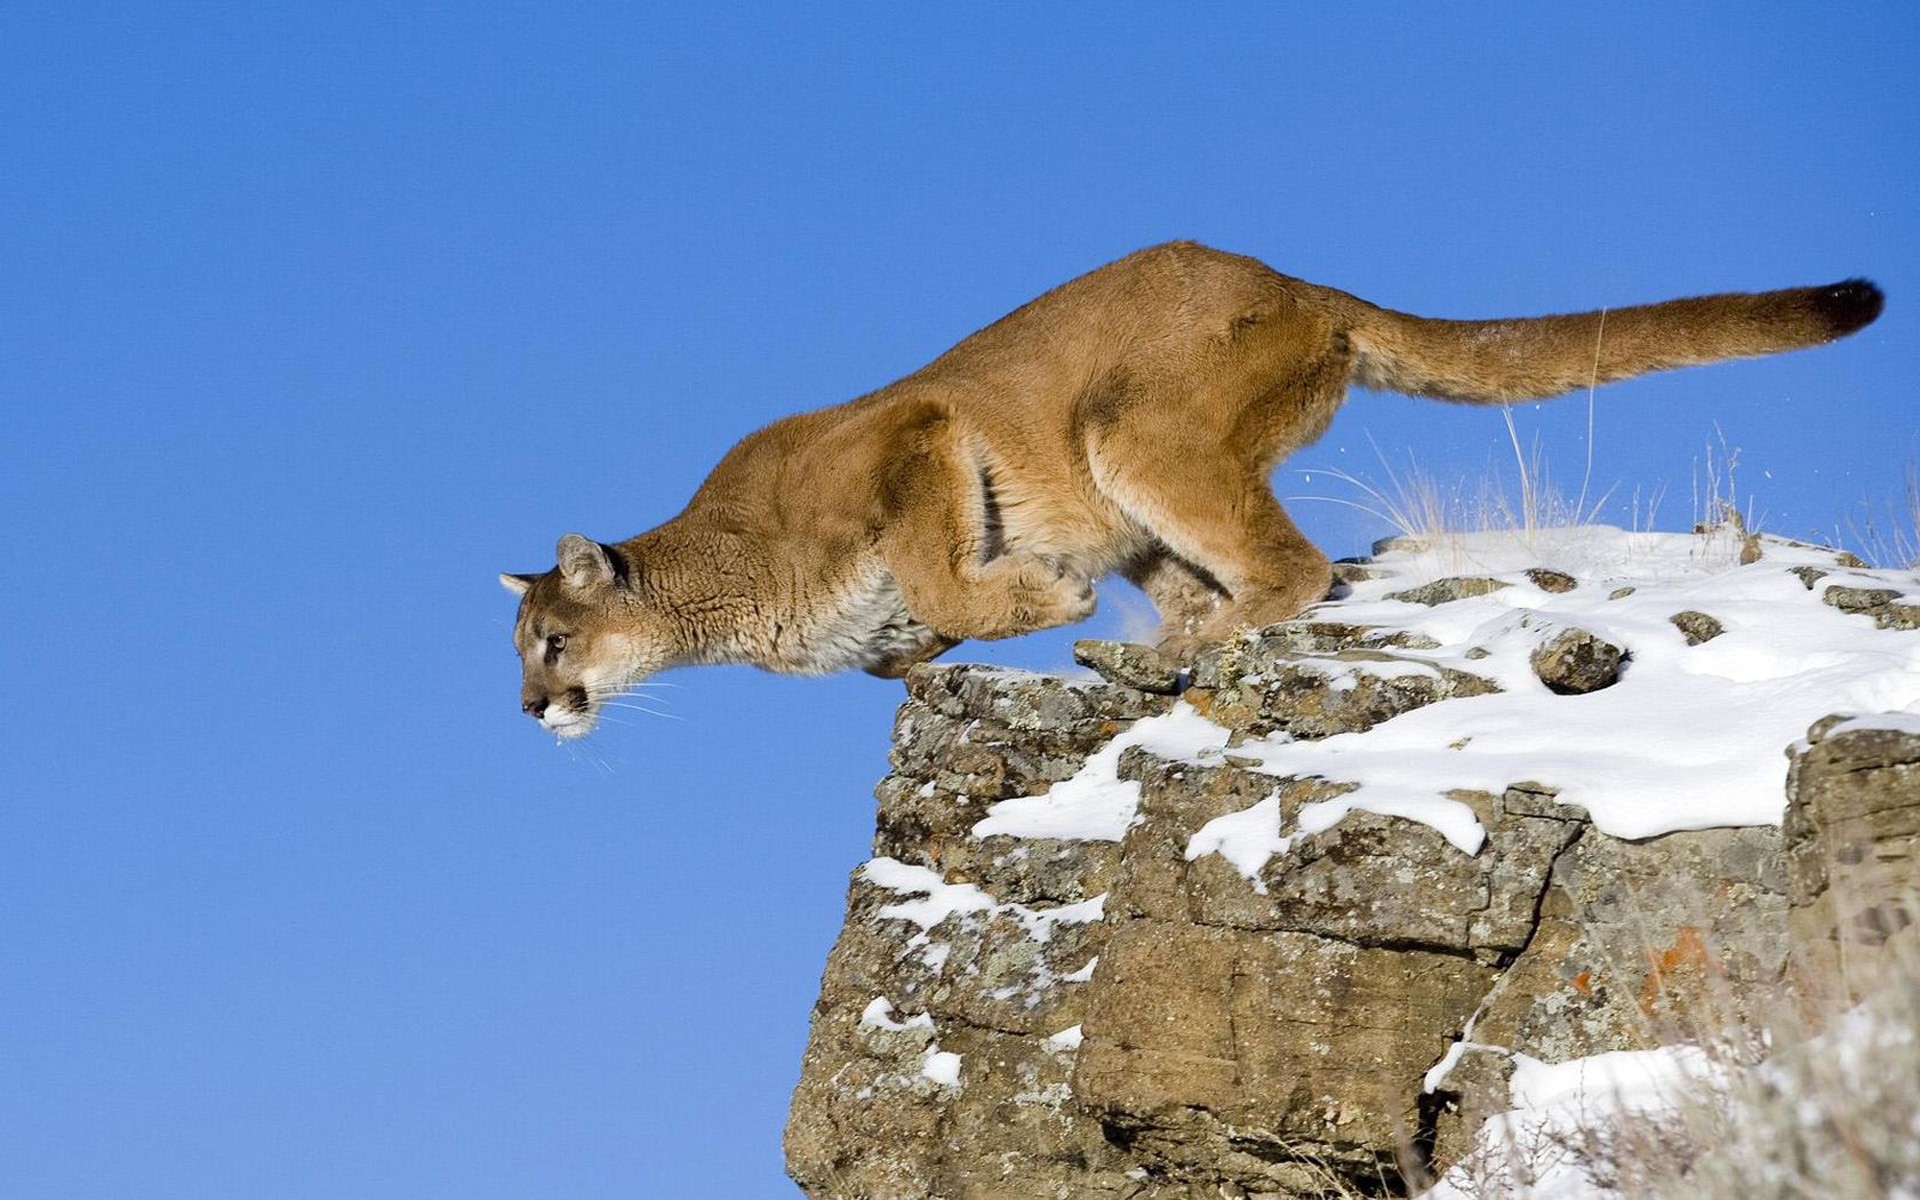 animals, jumping, puma, feline, cougars - desktop wallpaper